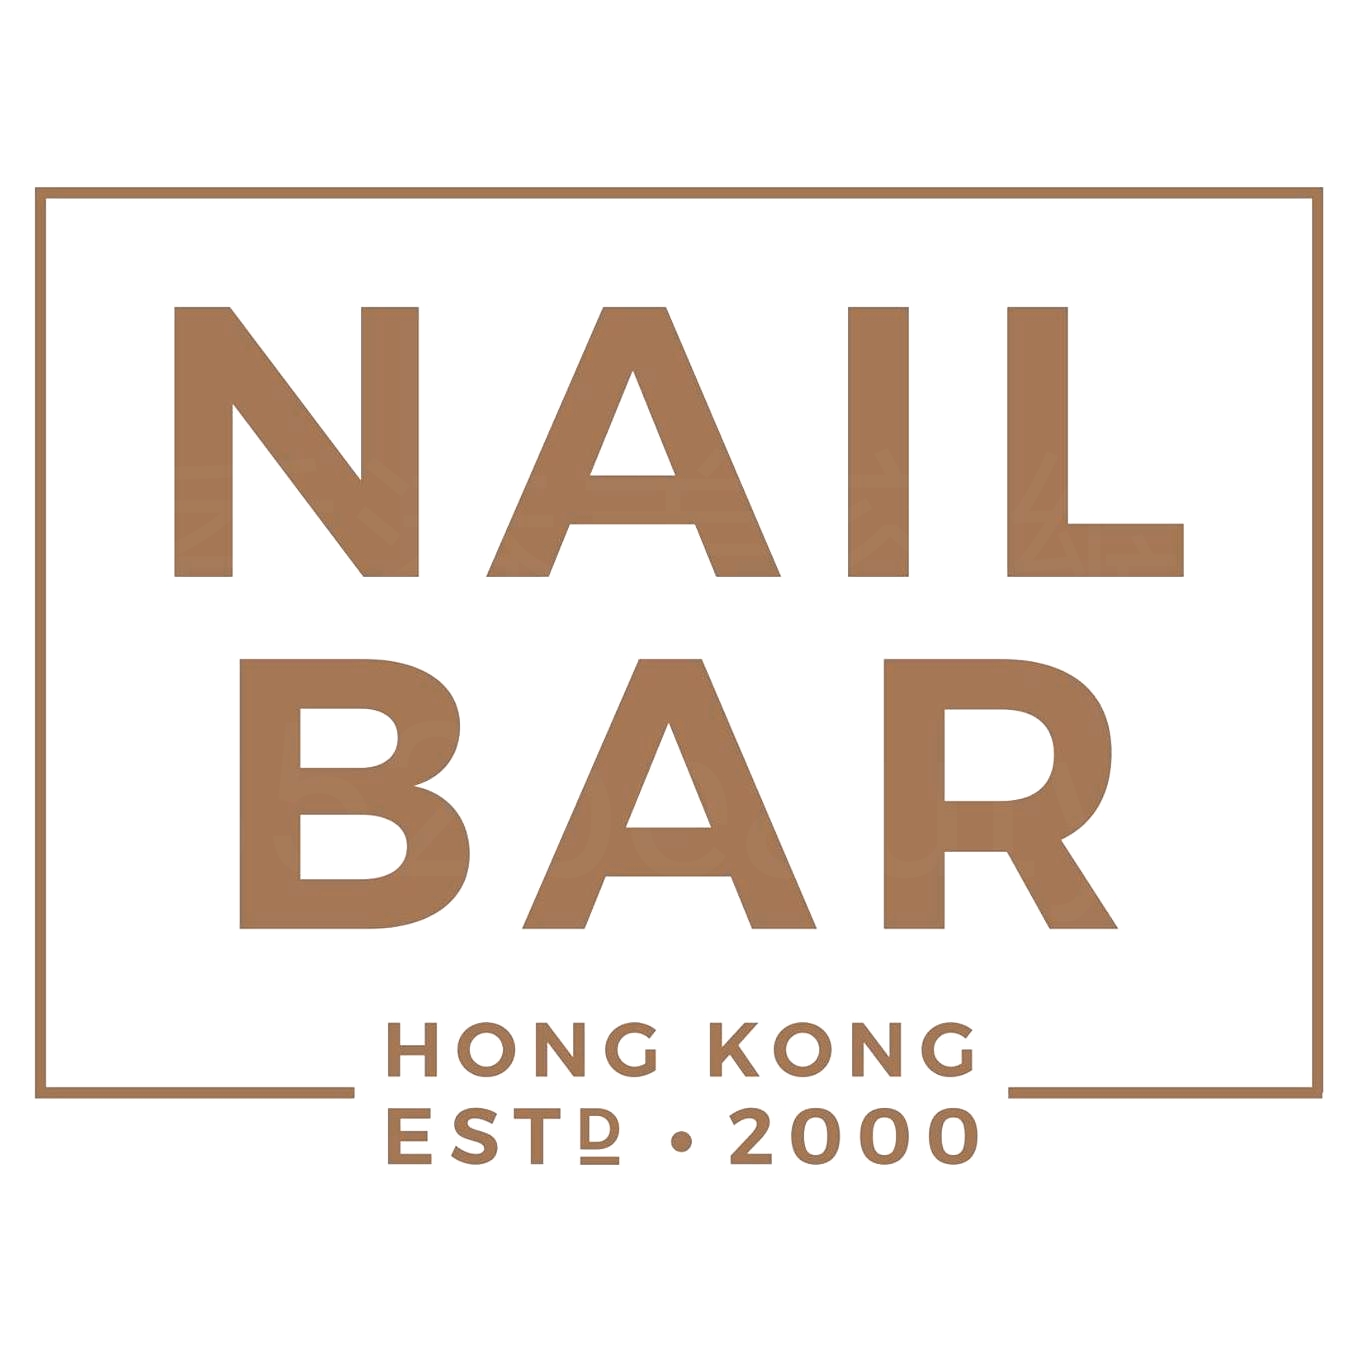 香港美容網 Hong Kong Beauty Salon 美容院 / 美容師: NAIL BAR (灣仔店)